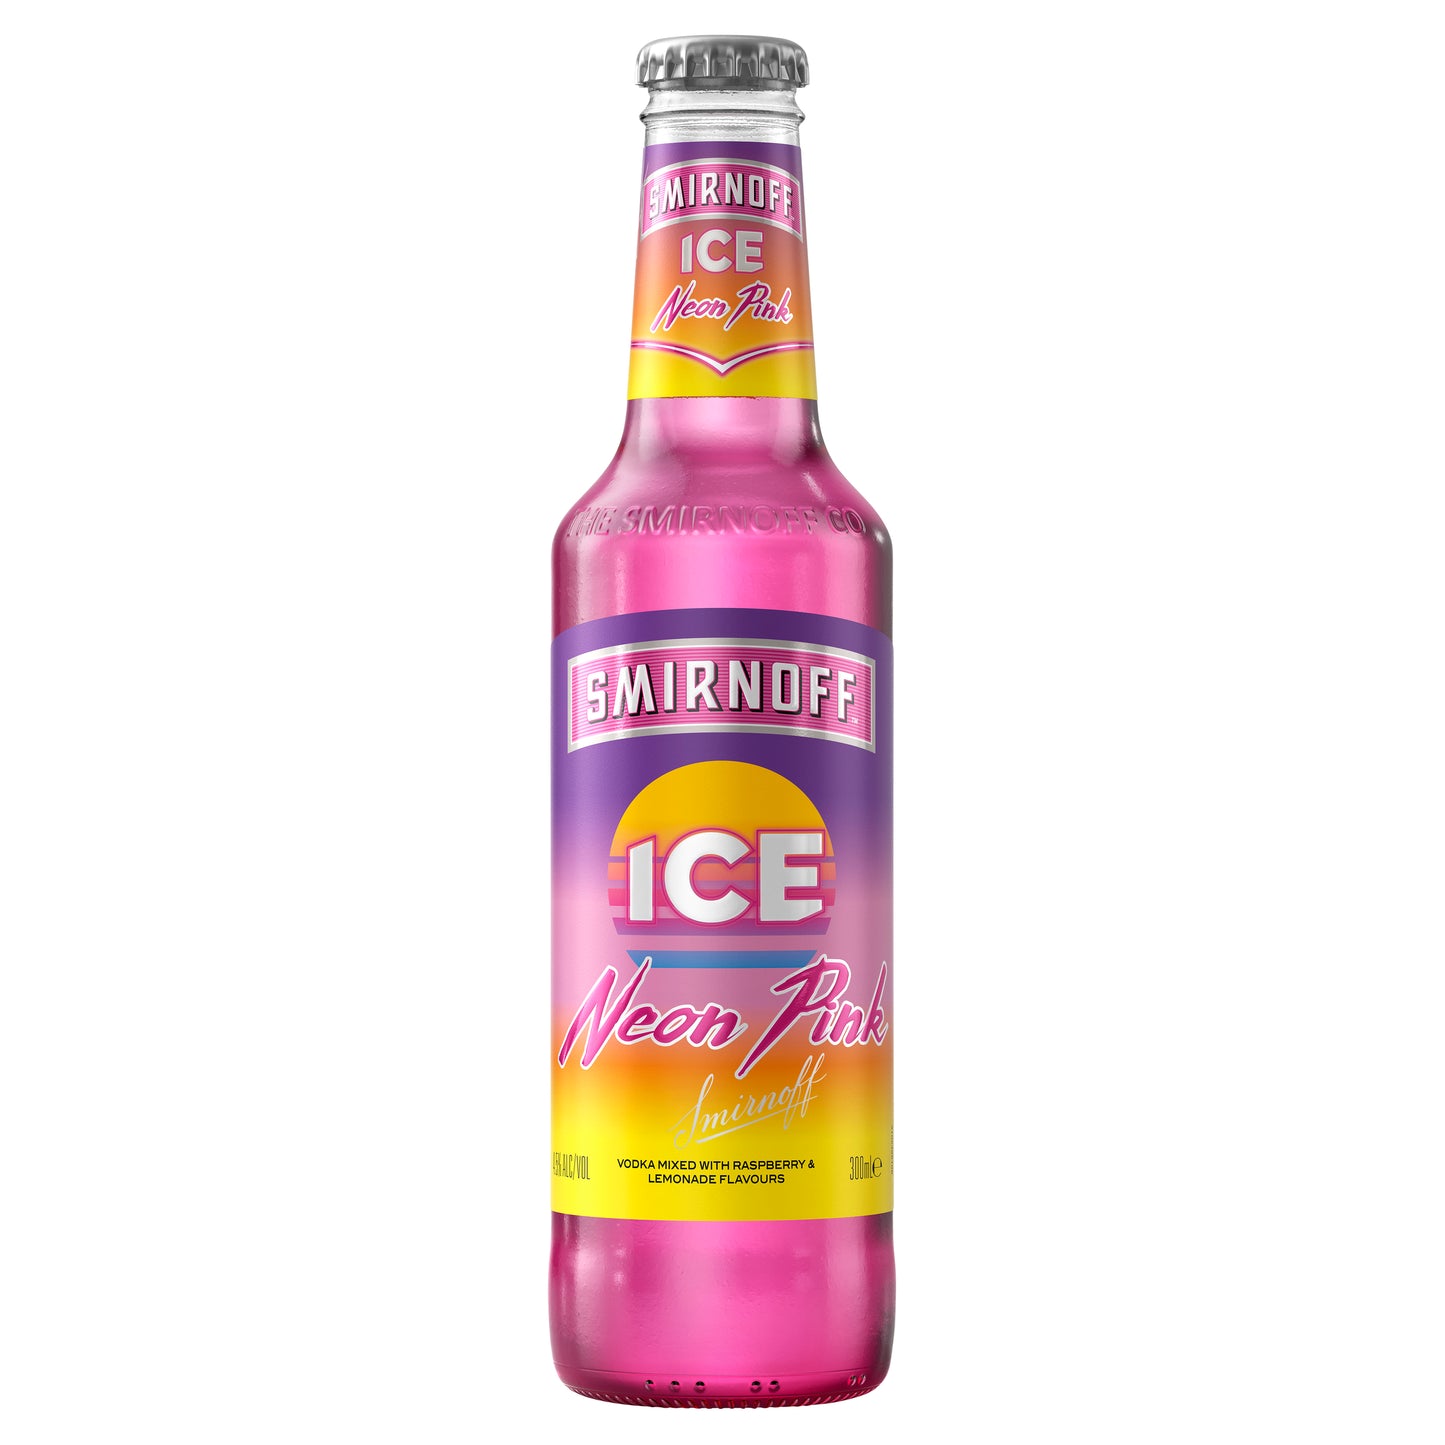 Smirnoff Ice Neon Pink Vodka 300ml